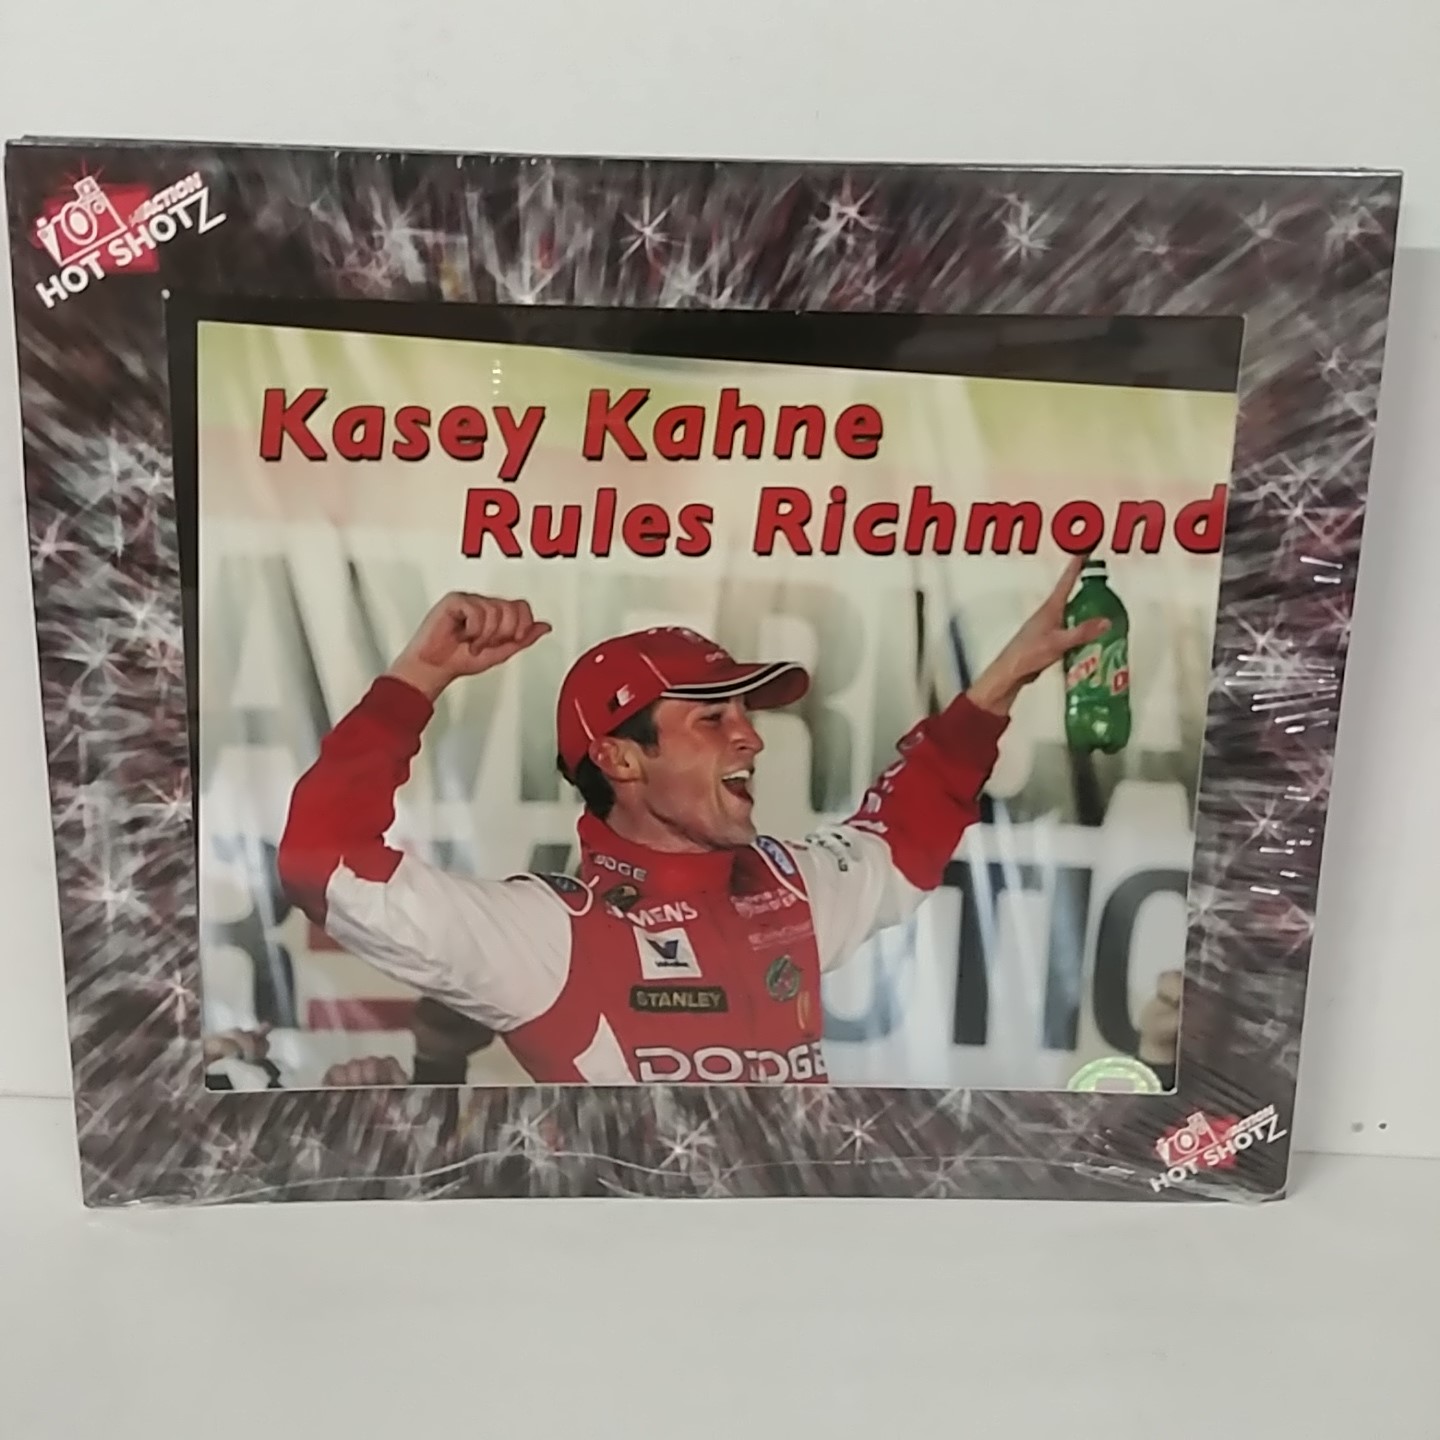 2005 Kasey Kahne Dodge "Richmond 1st Win"  Hot Shotz Photo